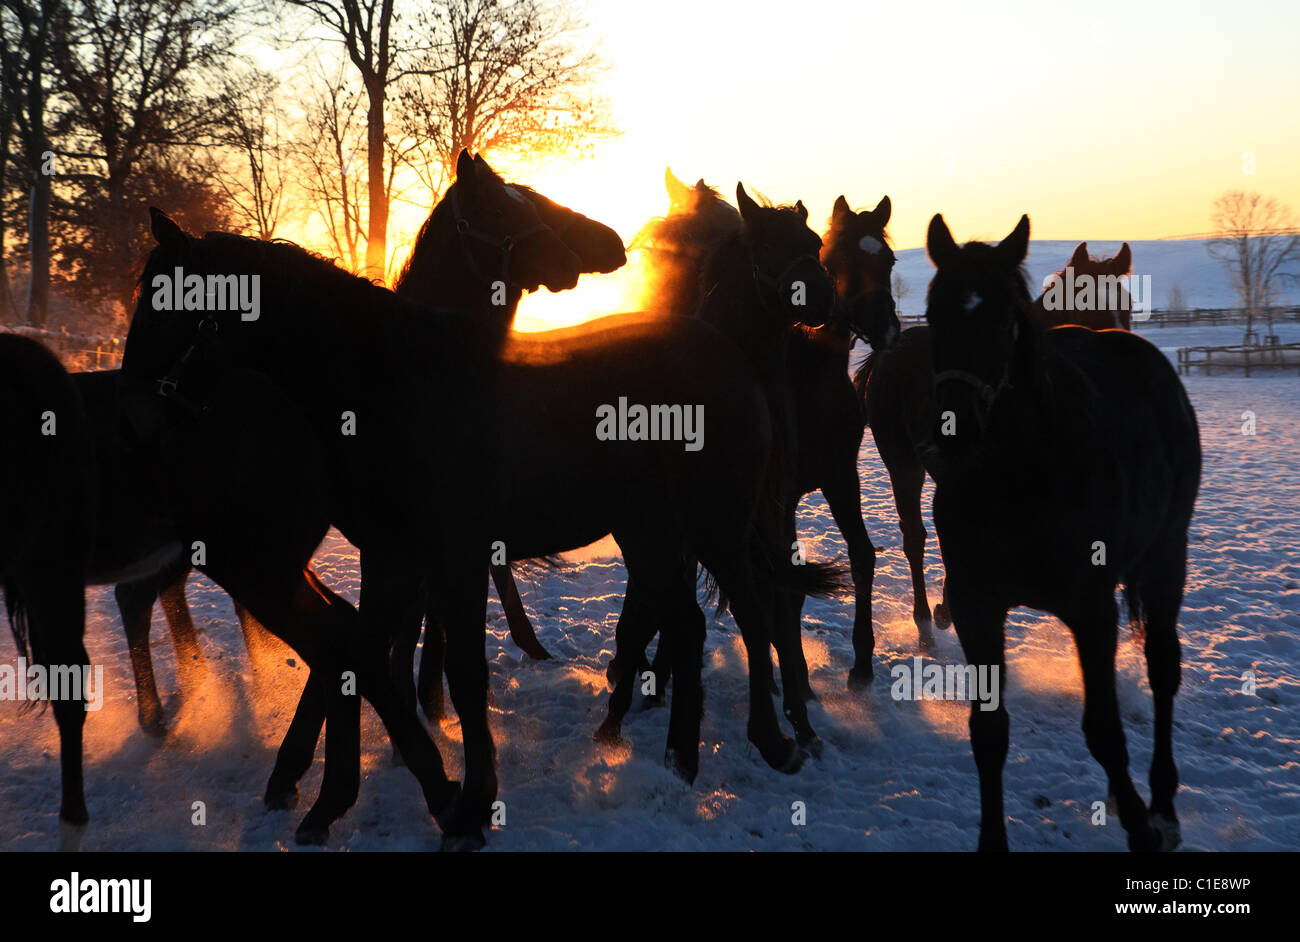 Silhouettes of horses at sunrise, Goerlsdorf, Germany Stock Photo